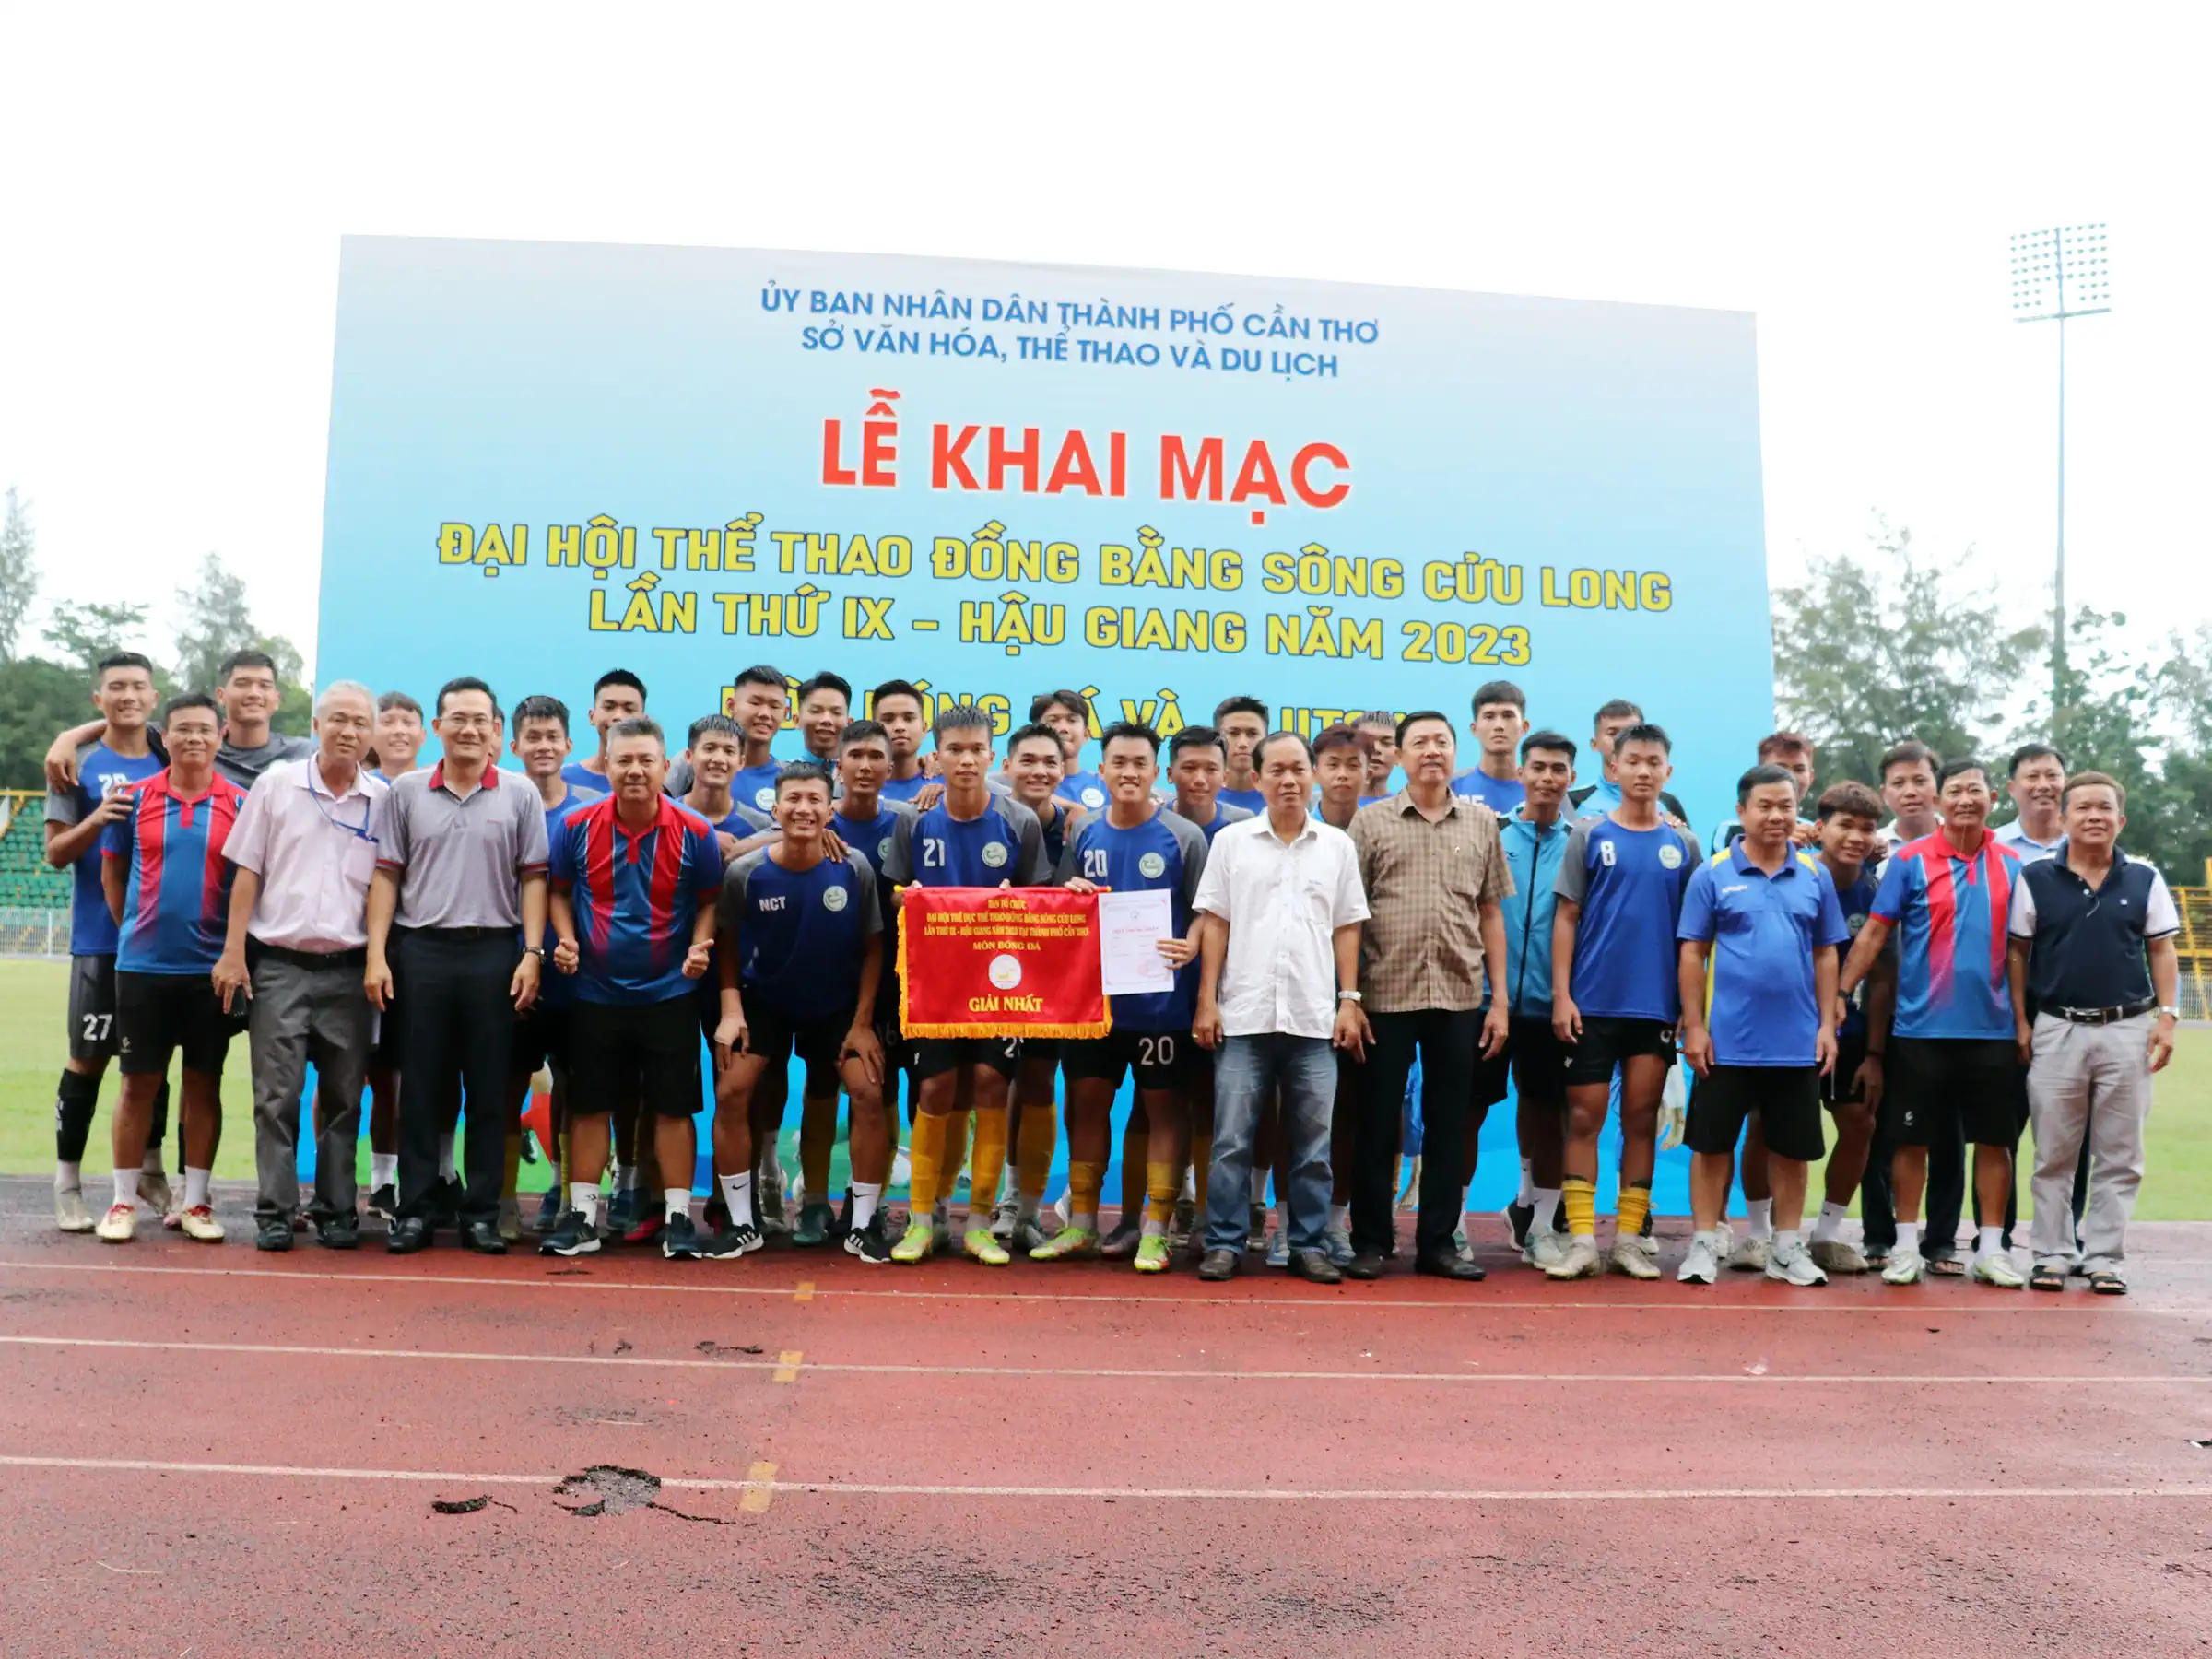 Đội U20 Cần Thơ giành HCV tại Giải Bóng đá U20 Đại hội Thể thao ĐBSCL năm 2023.  Ảnh: Hoàng Quyên